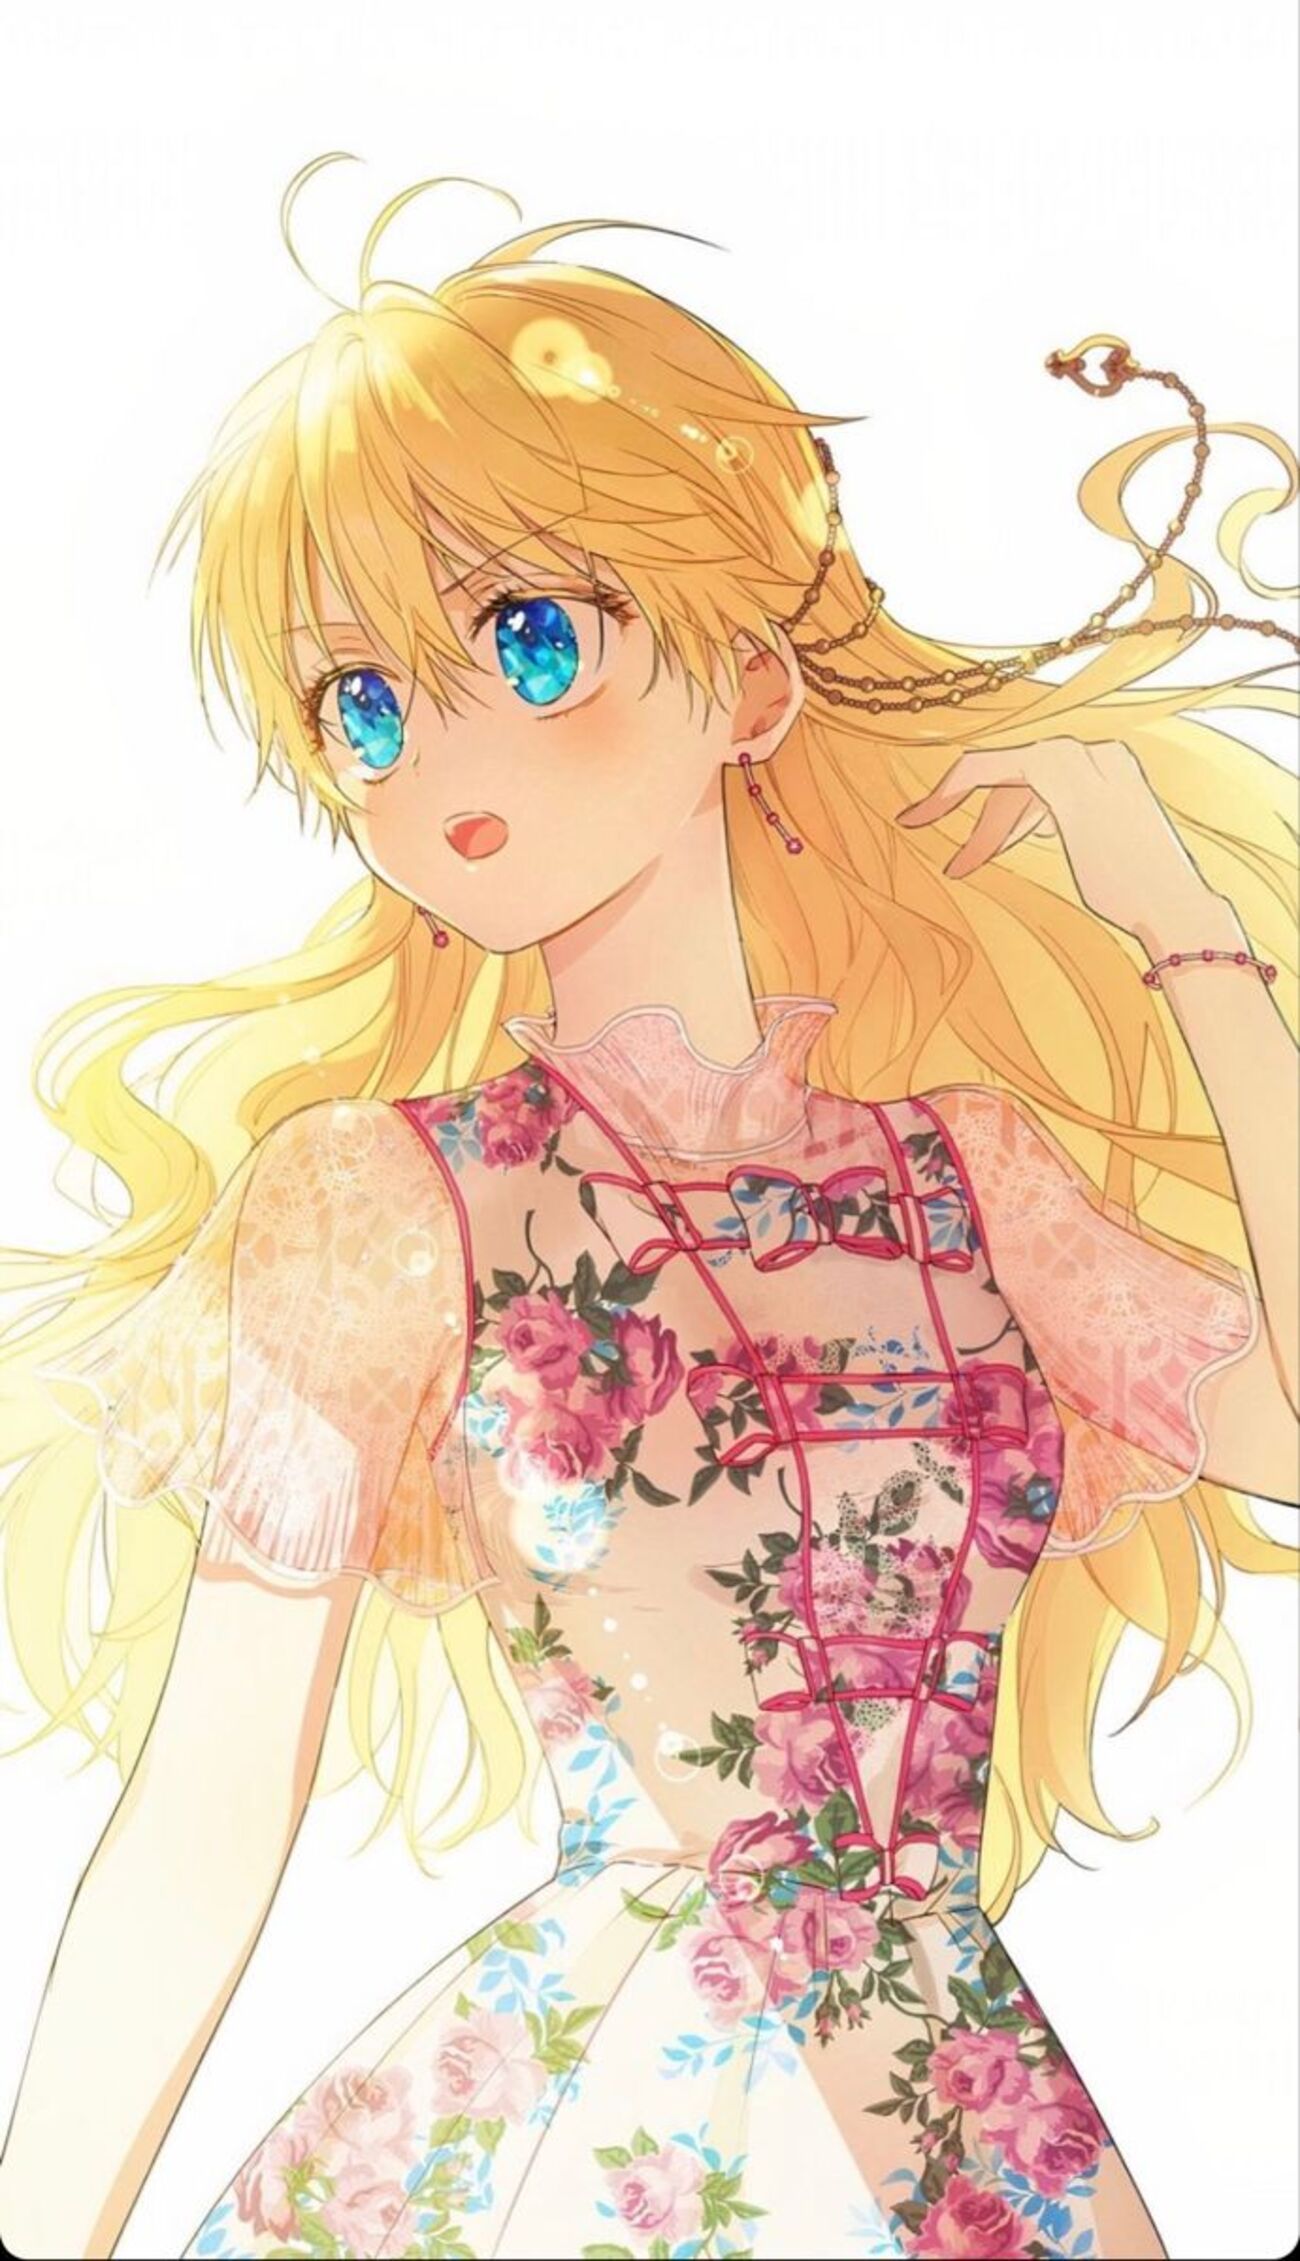 Công chúa anime tóc vàng với nét đẹp kiêu sa và thần tiên cảm động sẽ làm bạn phải ngất ngây. Hình ảnh của Công chúa anime tóc vàng này sẽ khiến bạn say mê và mơ mộng về một thế giới cổ tích nơi mọi điều đều có thể trở thành hiện thực.